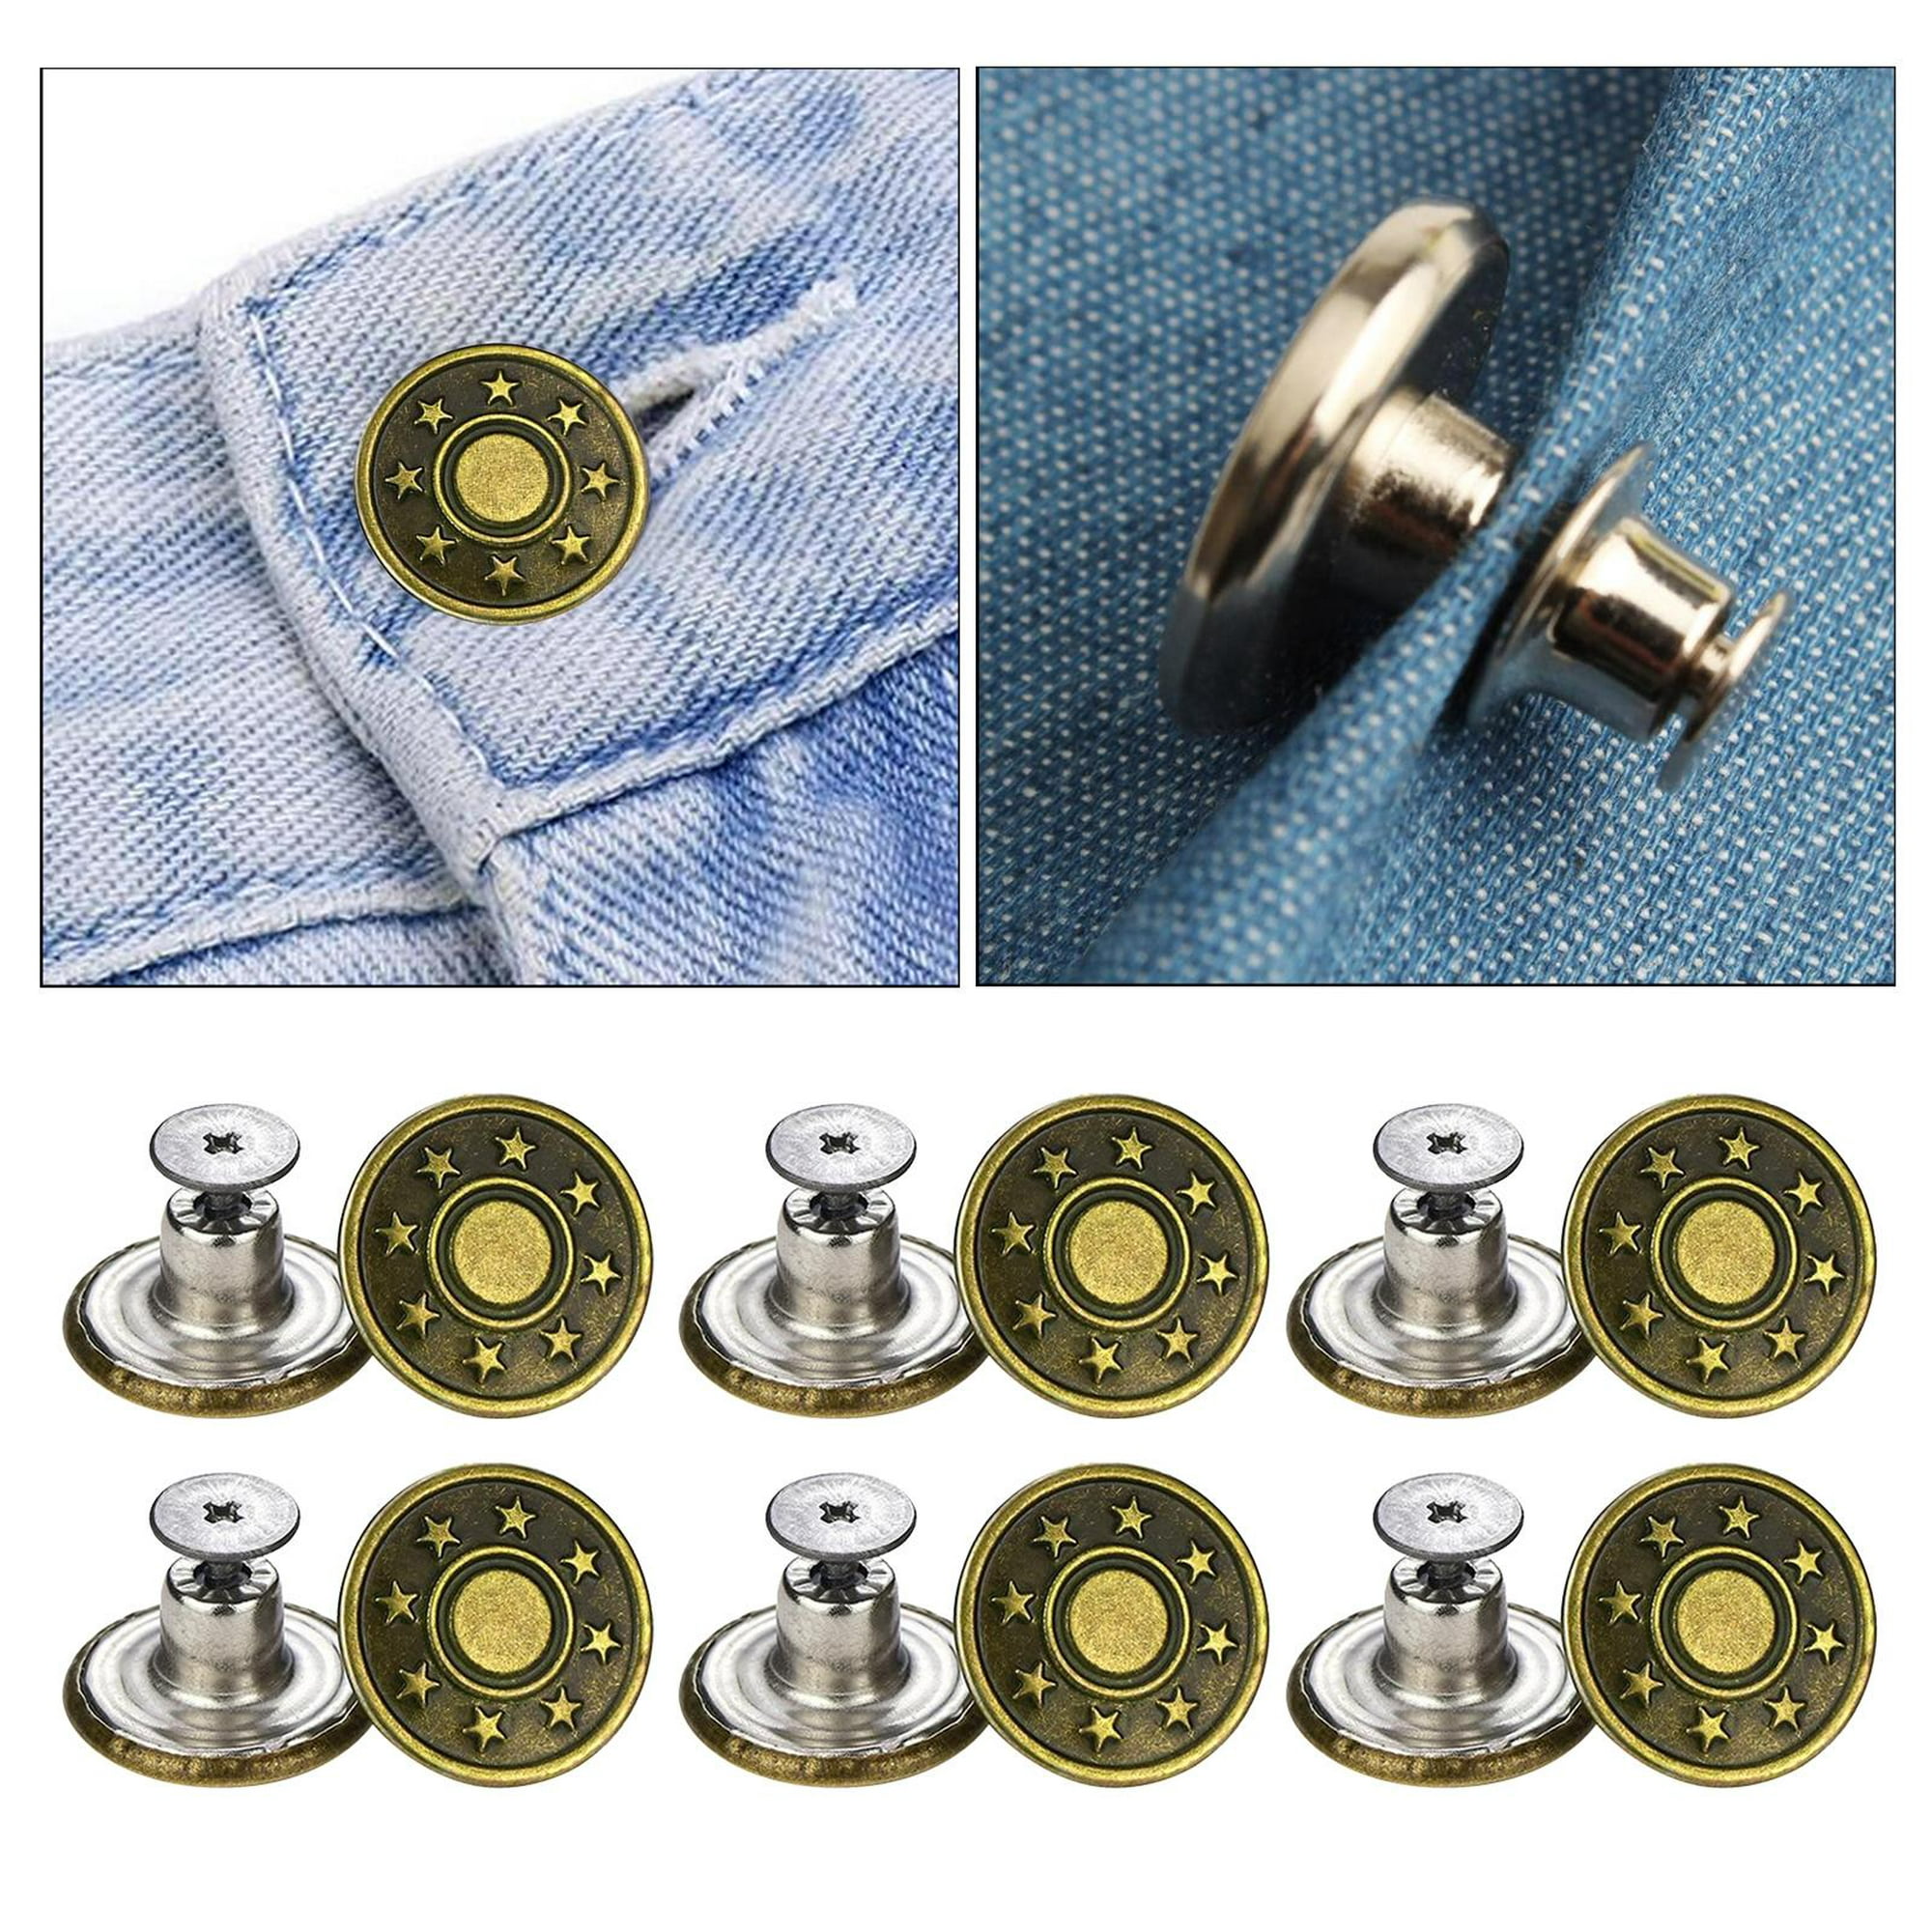 Kit de botones de repuesto para pantalones vaqueros 24 botones de